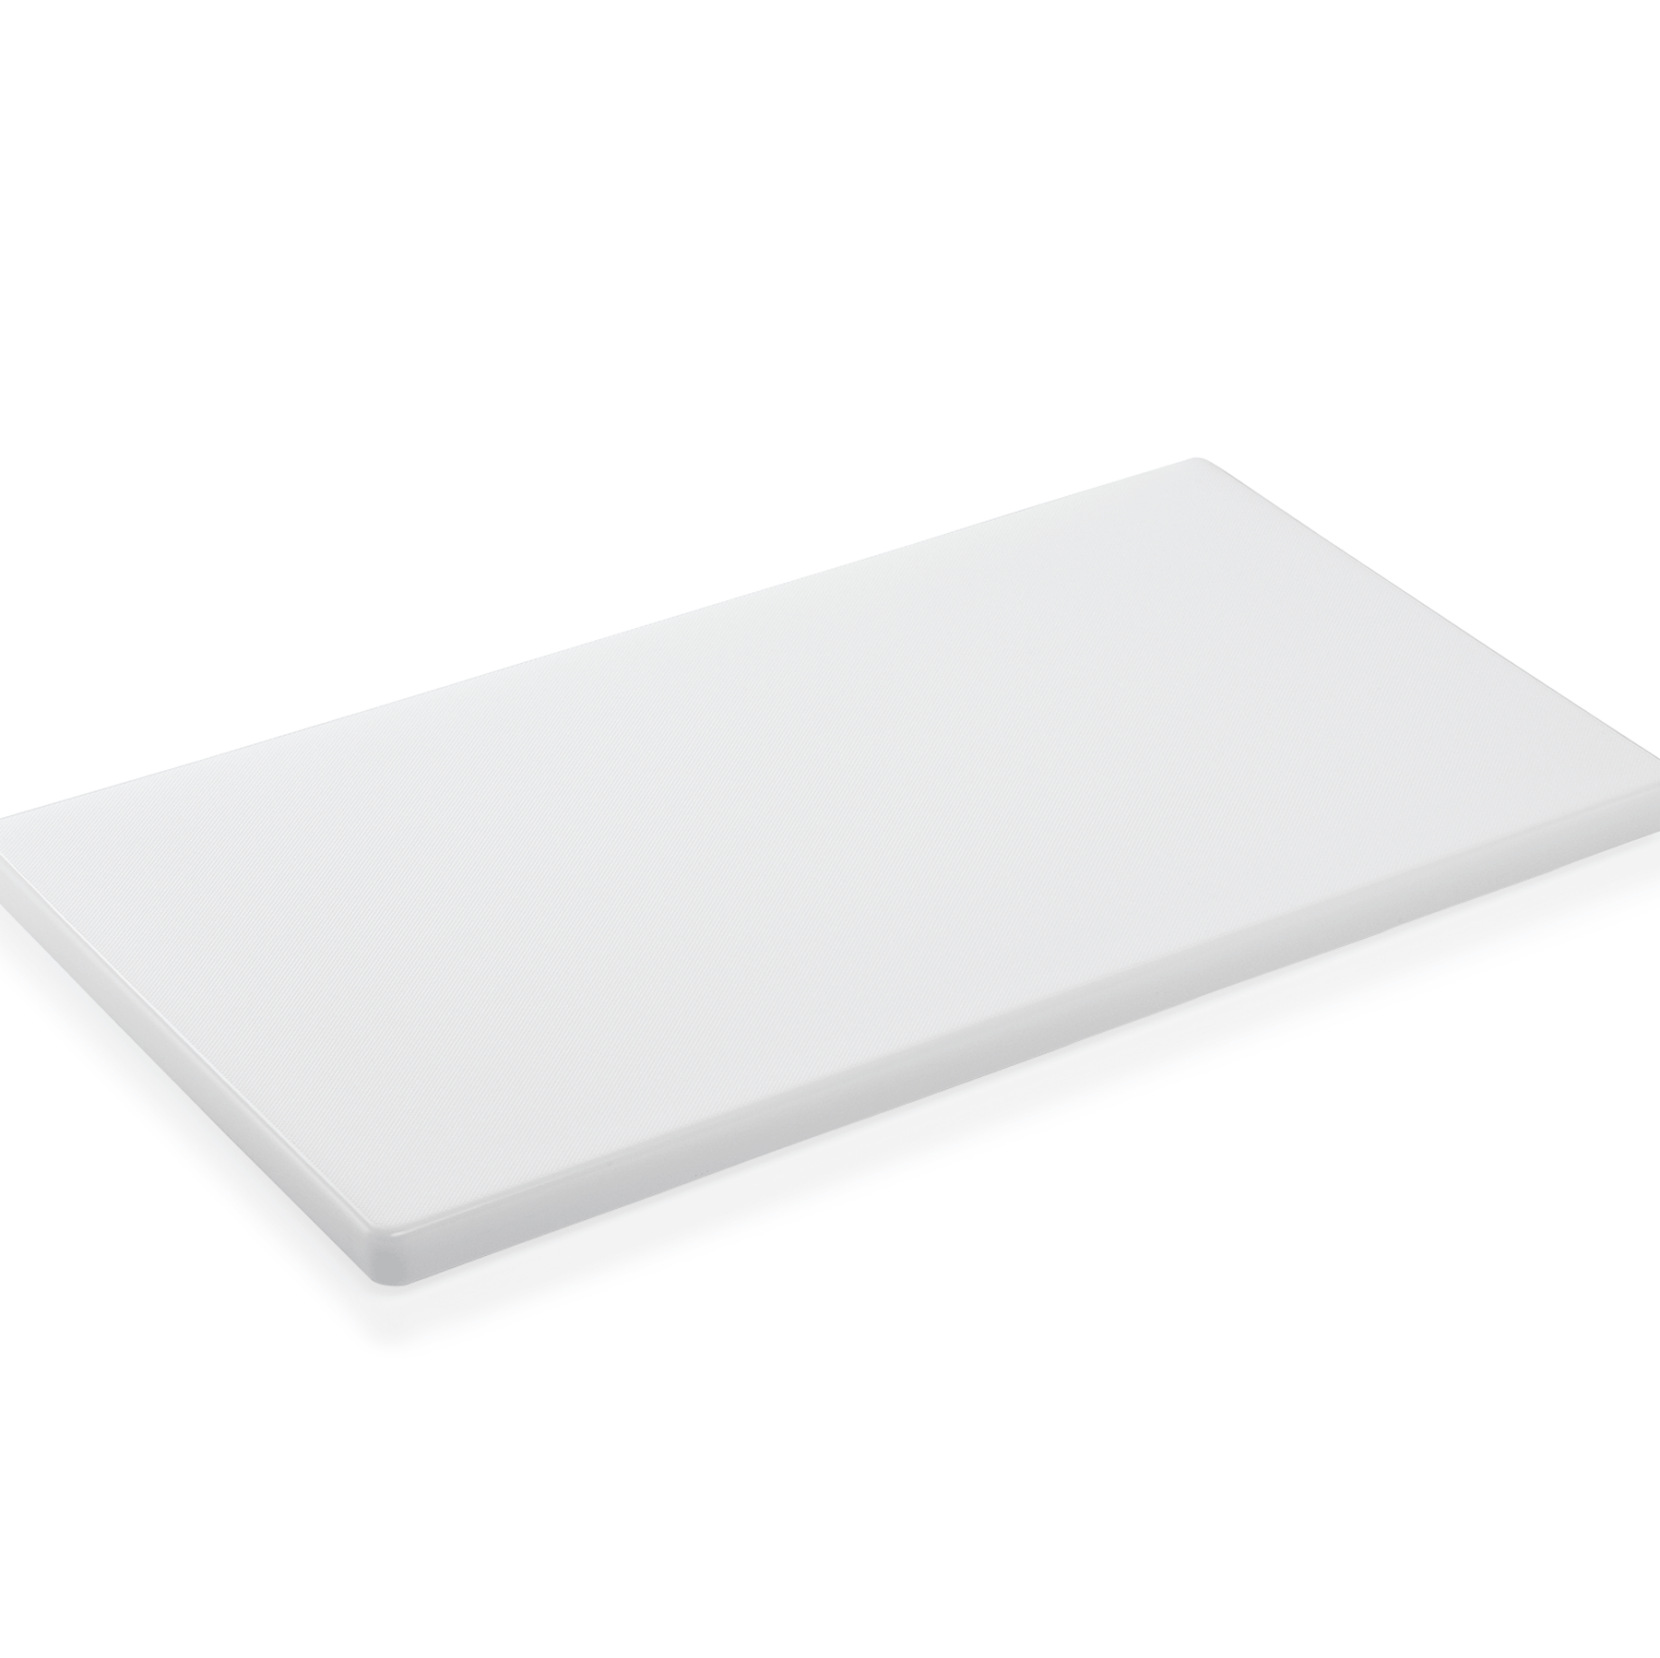 Schneidbrett HACCP, 60 x 40 x 3 cm, weiß, Polyethylen